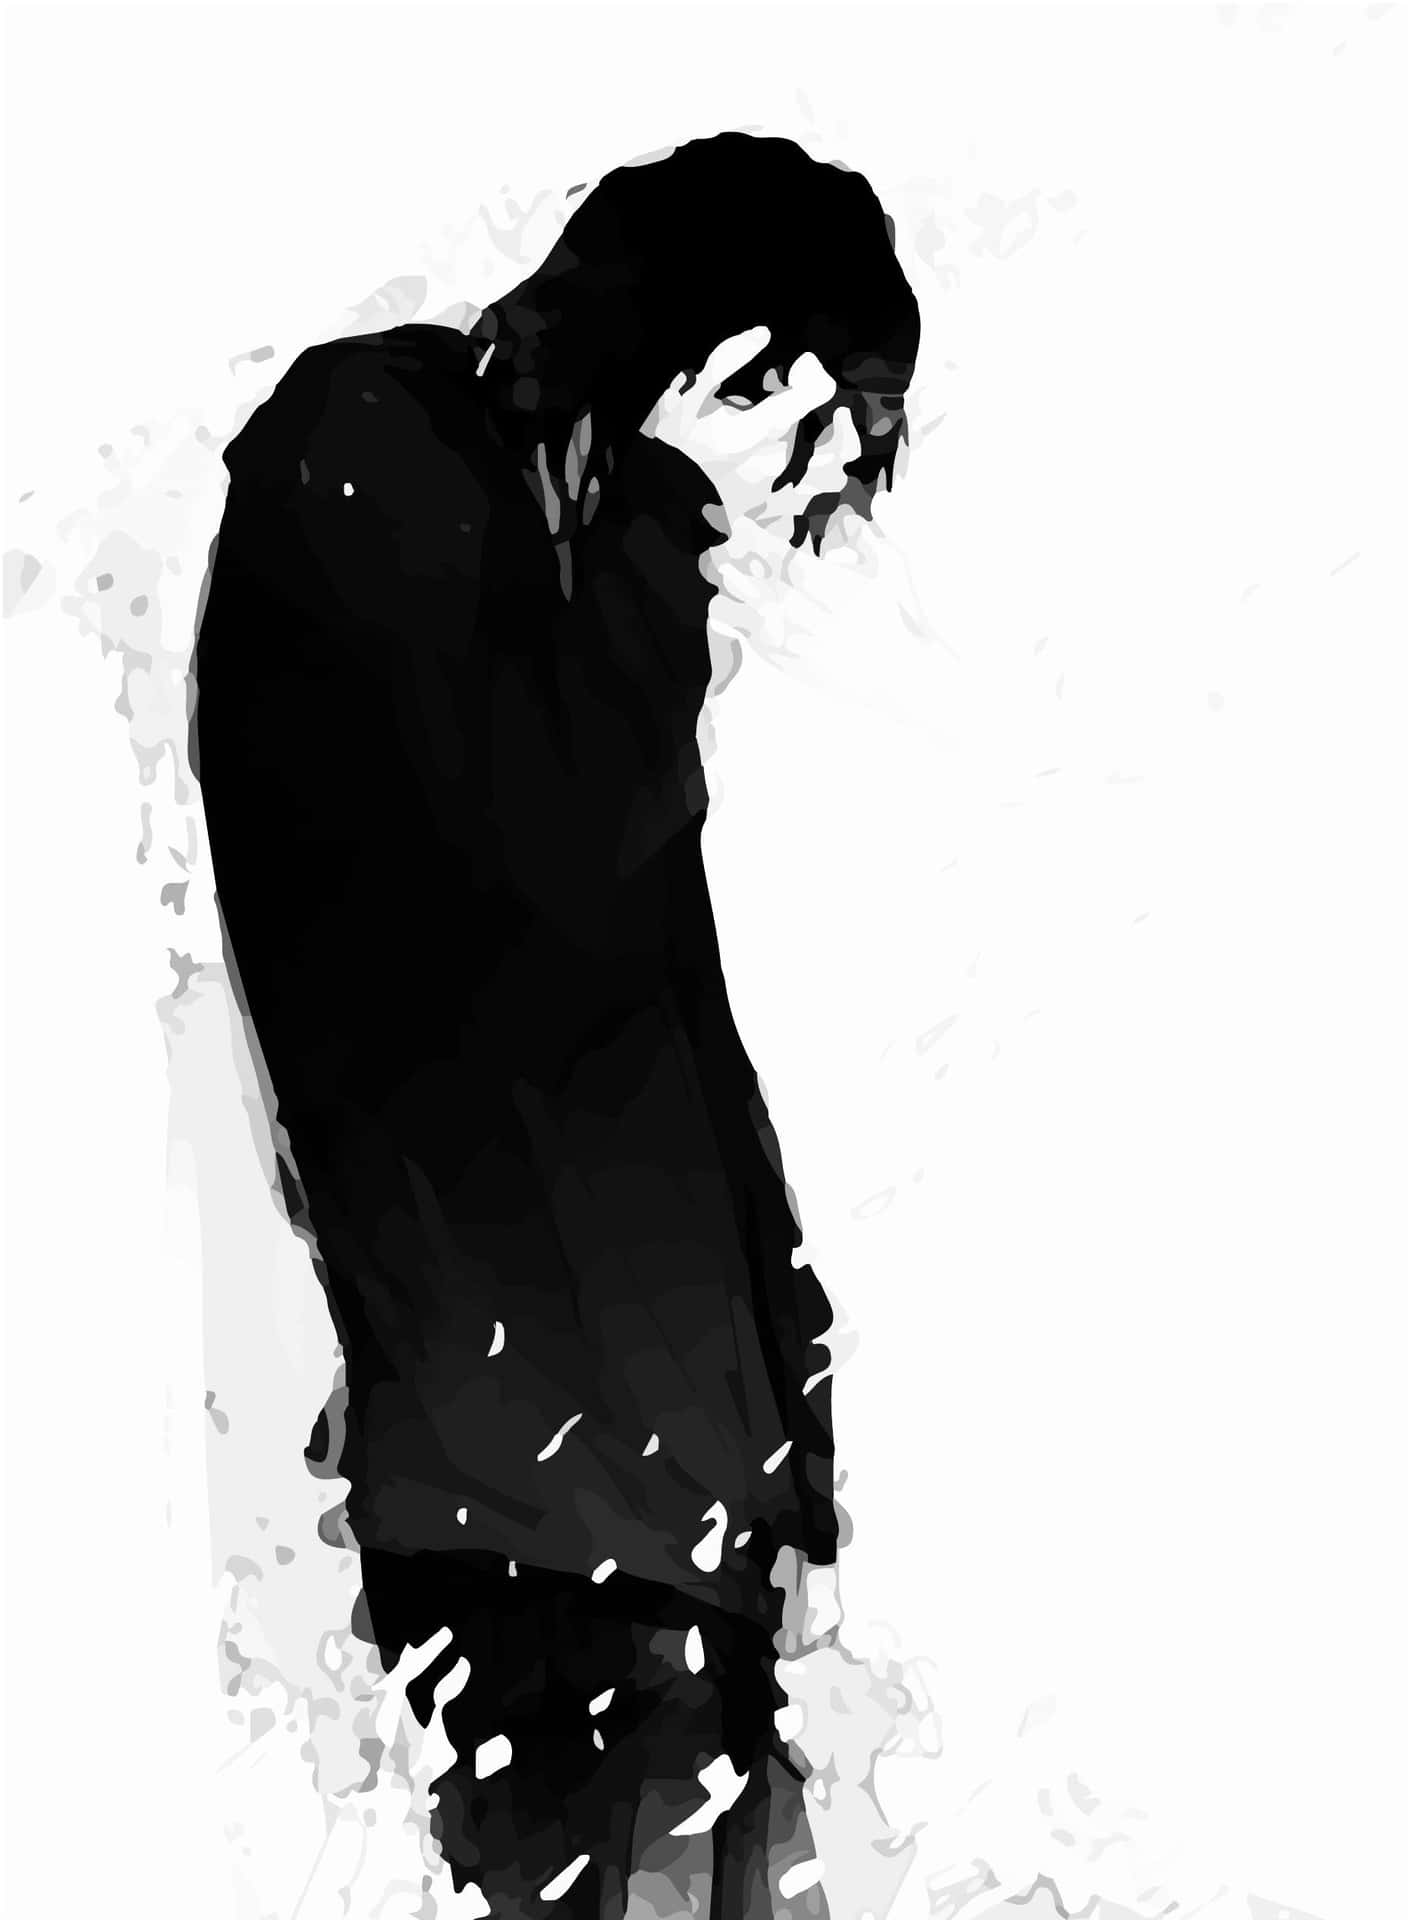 Sad Depressing Anime Boy Crying Alone Digital Art Background